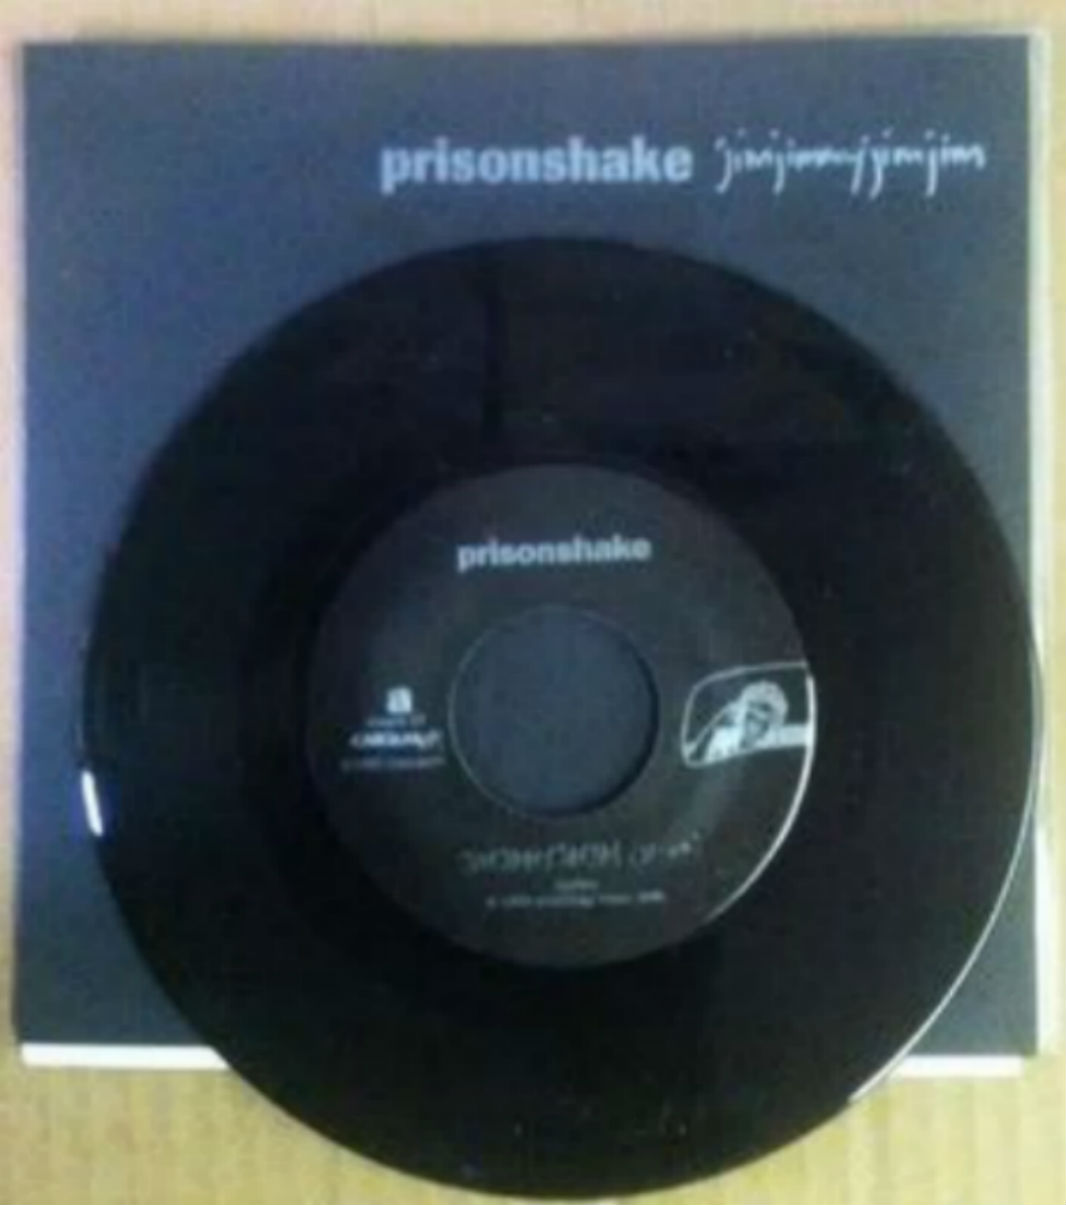 Prisonshake / Jimjimmyjimjim